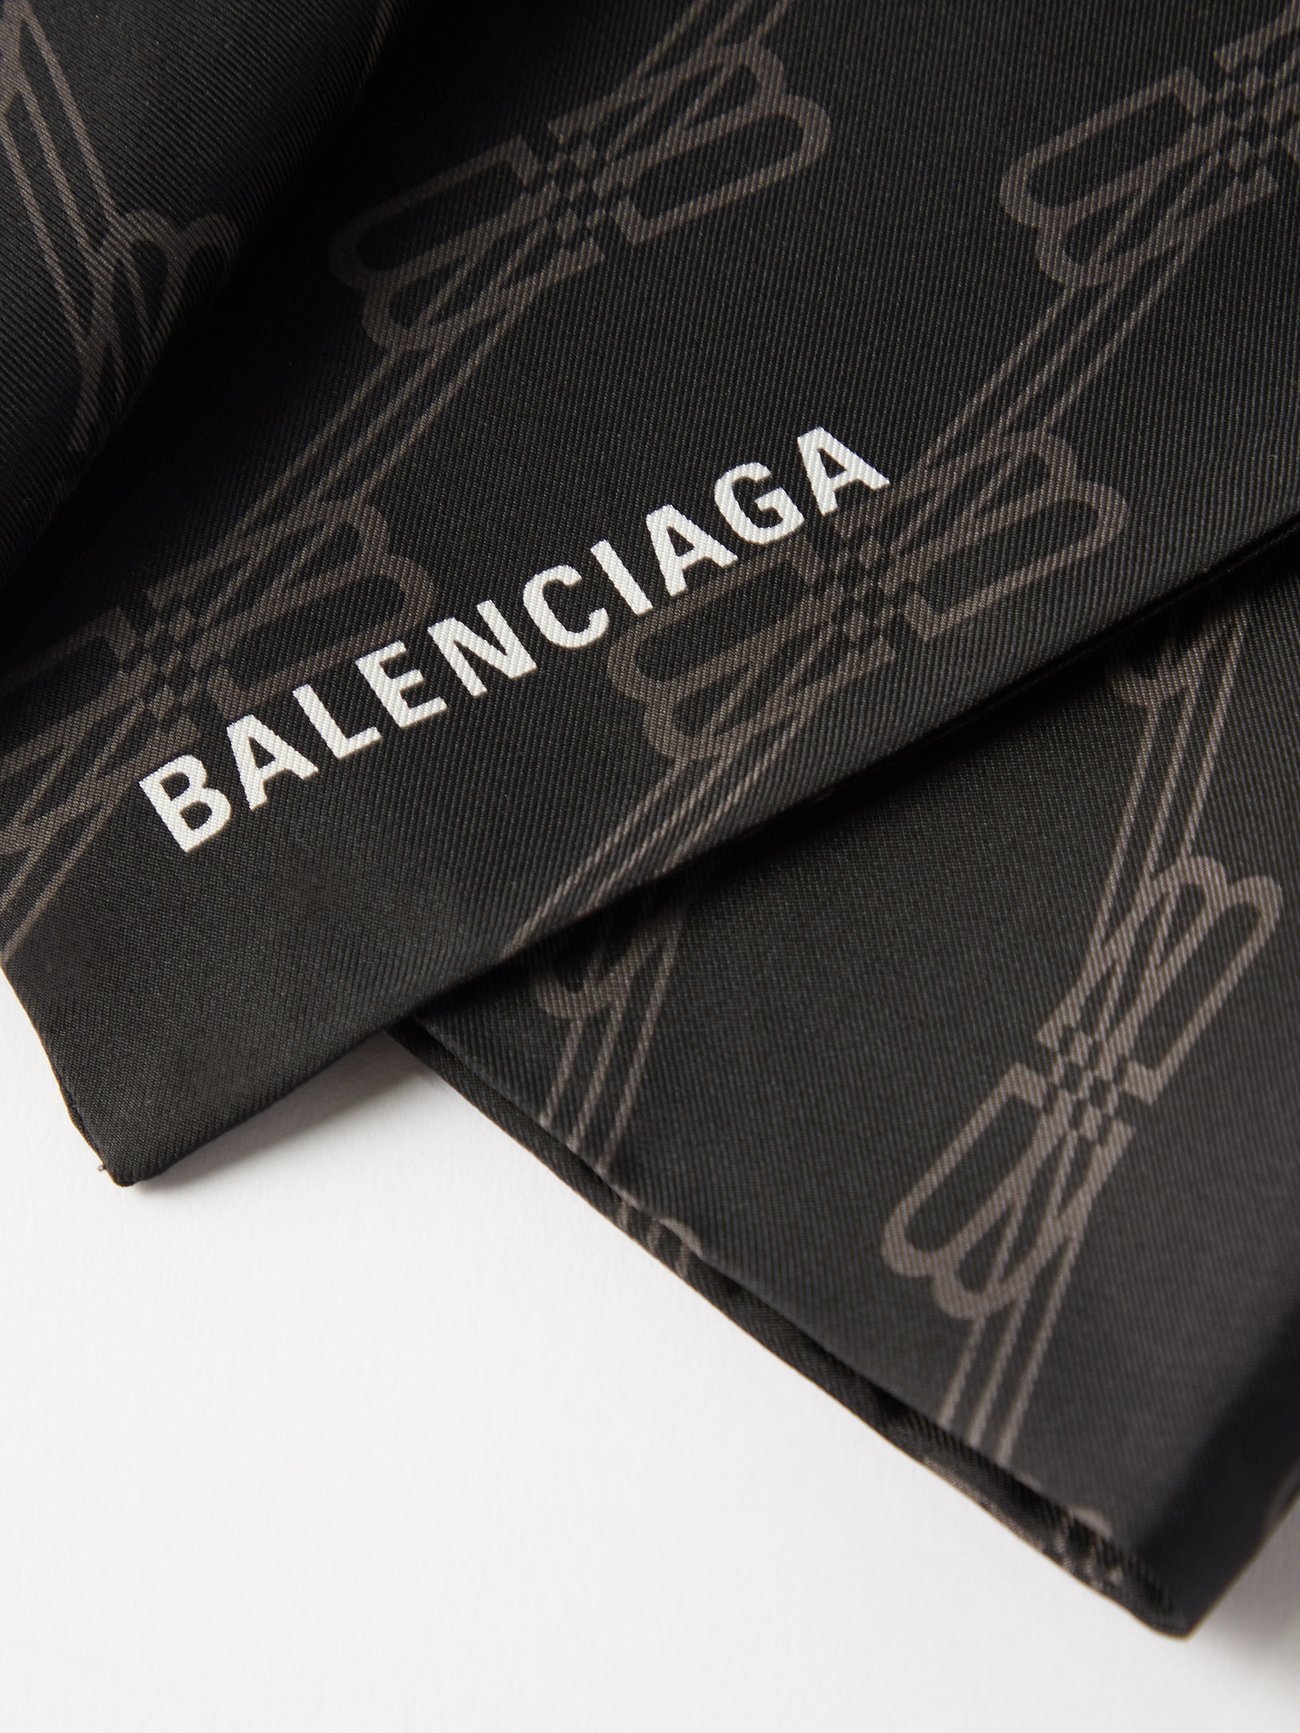 Balenciaga Bb Monogram Scarf in Natural for Men